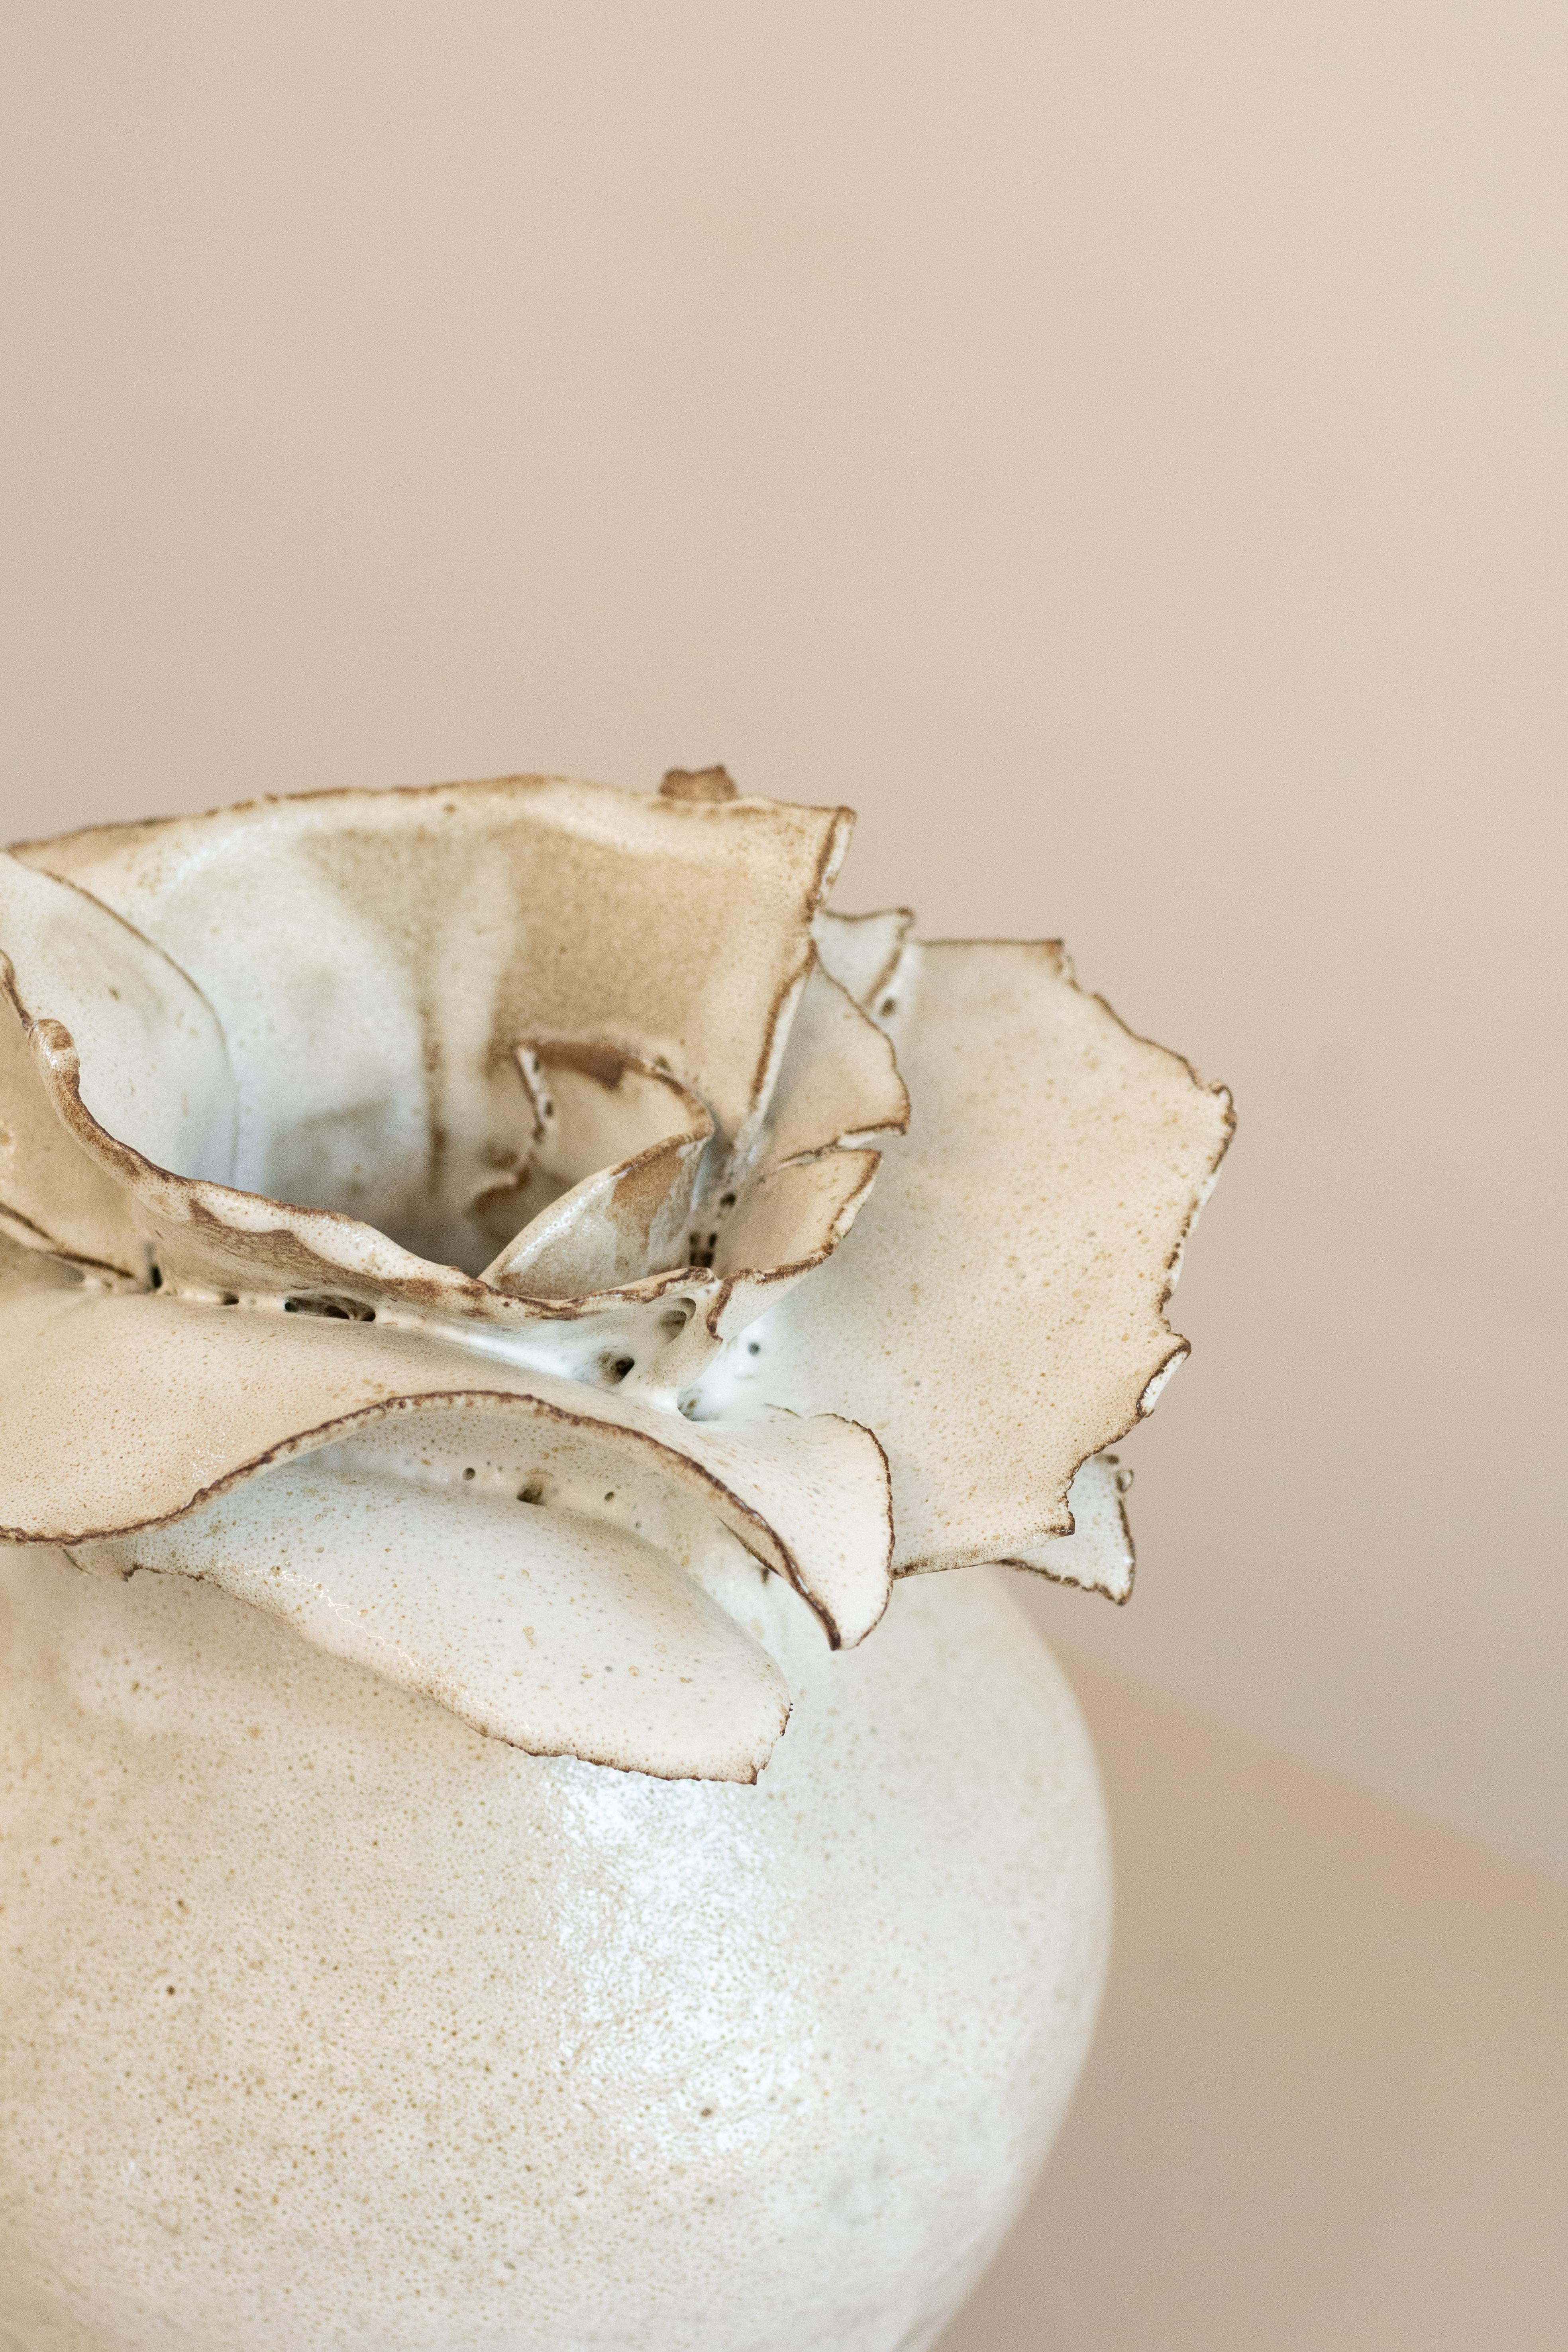 Diese zeitgenössische Keramikvase wurde von den Händen des Künstlers Andrei Detoni Stück für Stück gefertigt, wobei die Konturen und Texturen seiner Hände auf der Oberfläche eingeprägt wurden. Jedes Stück ist ein Unikat, dessen Form sich bei jeder